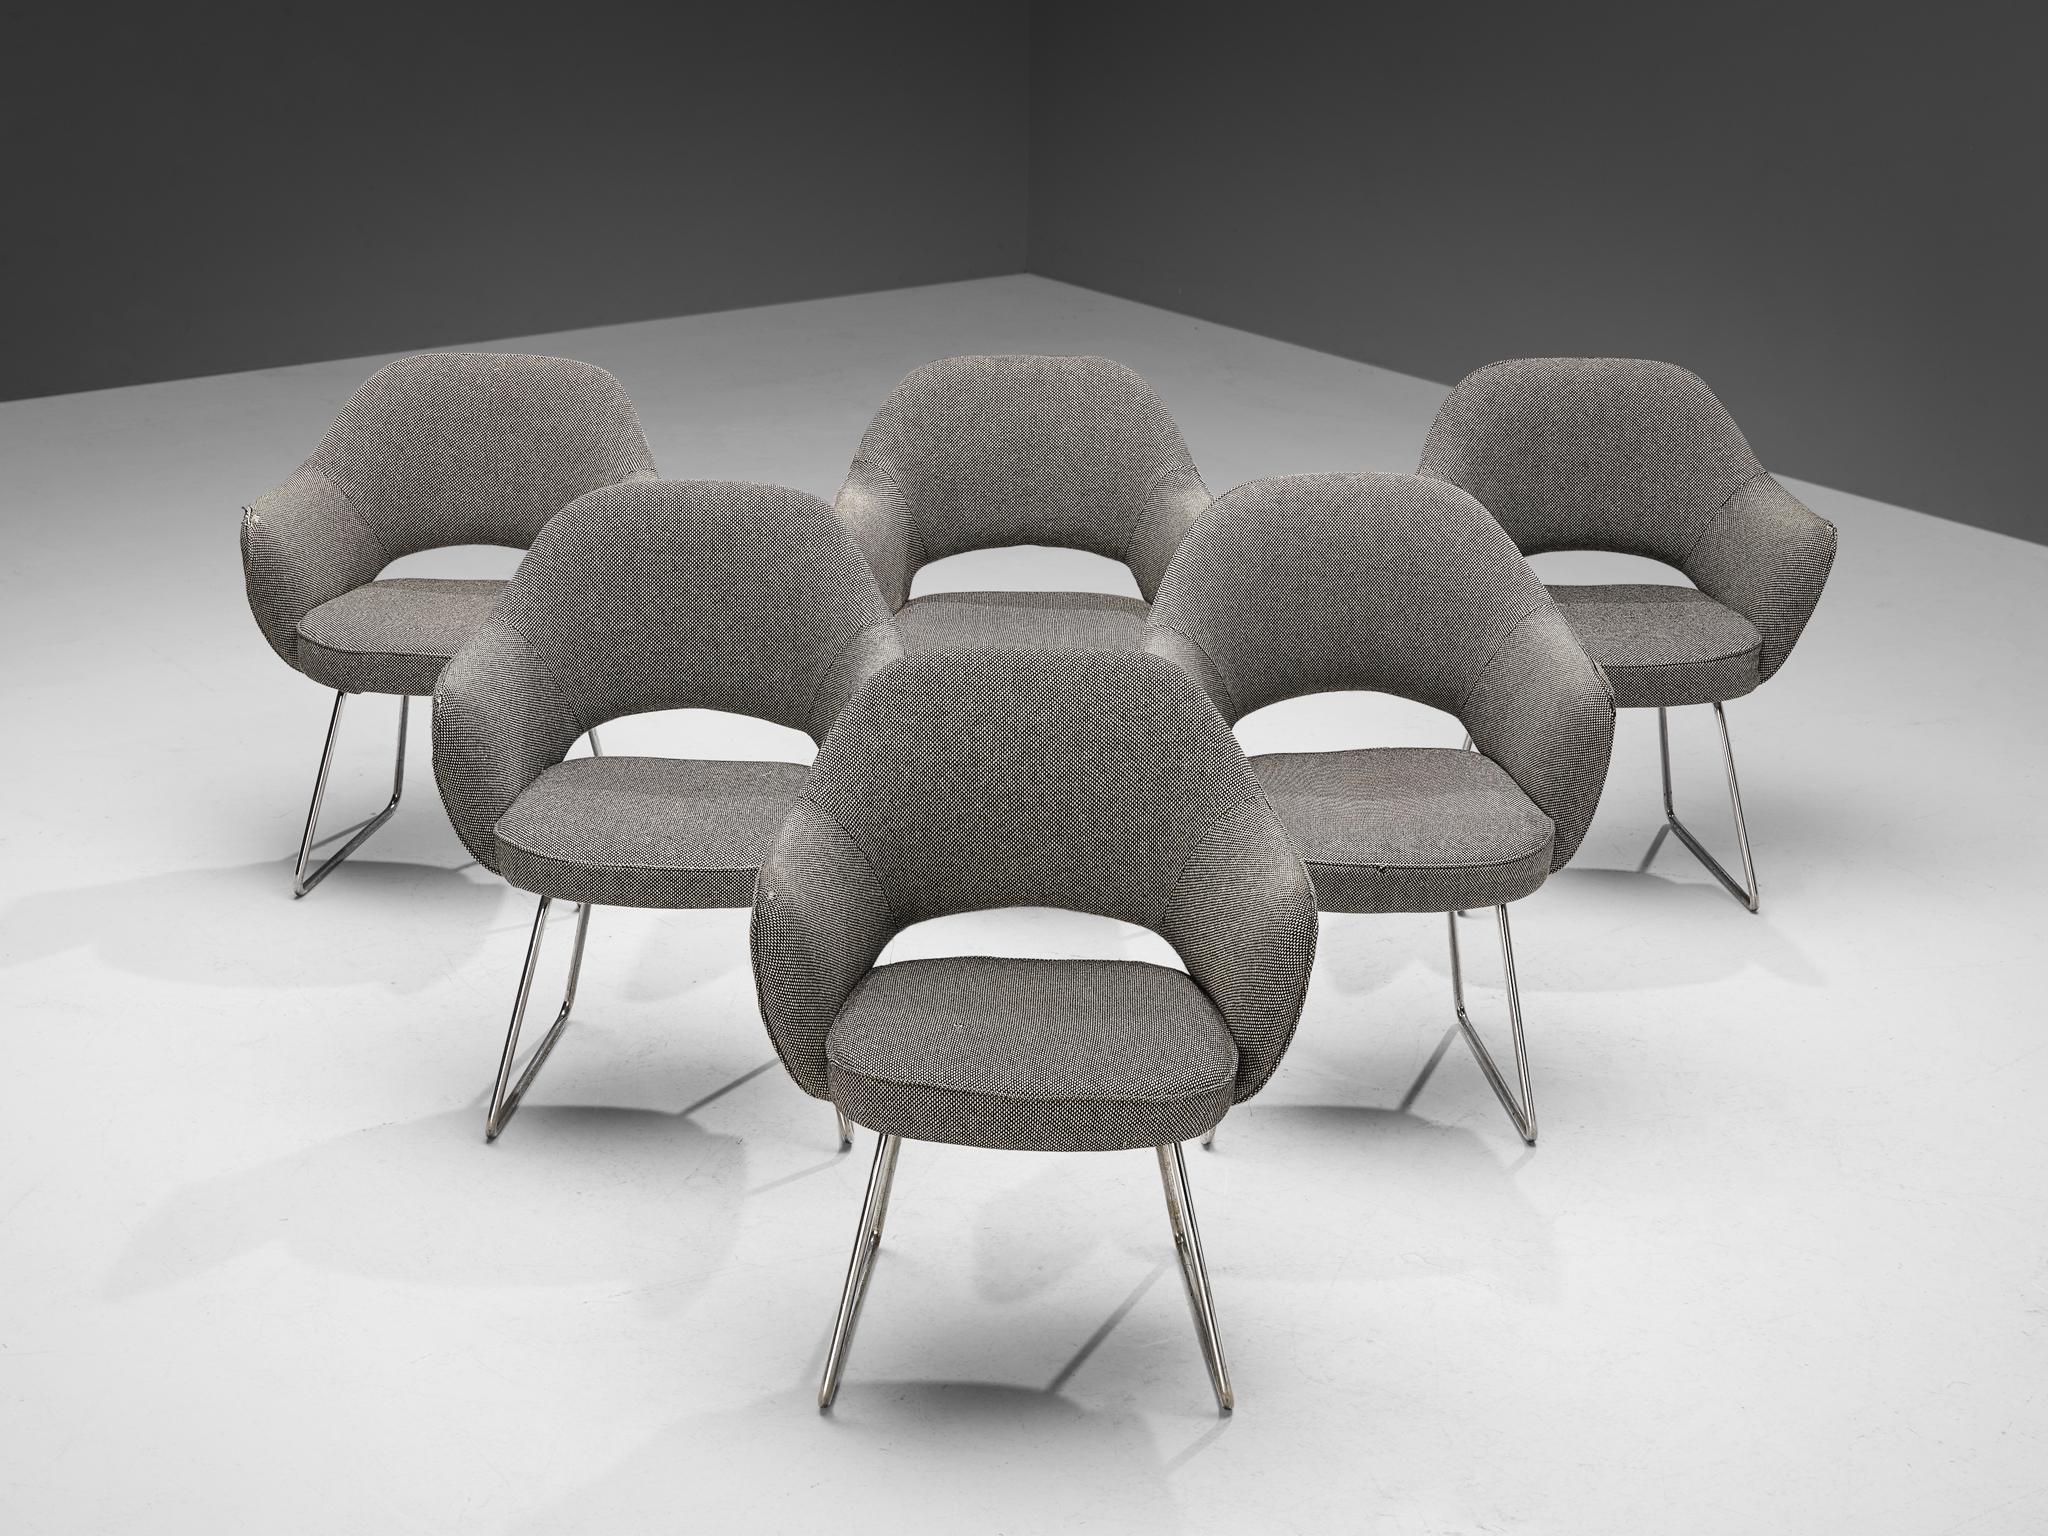 Eero Saarinen pour Knoll International, ensemble de fauteuils 'Conference', tissu original, métal chromé, France, Paris, conçu en 1957

Cet ensemble de six fauteuils a été commandé par le siège de l'UNESCO situé à Paris. Ce bâtiment emblématique a